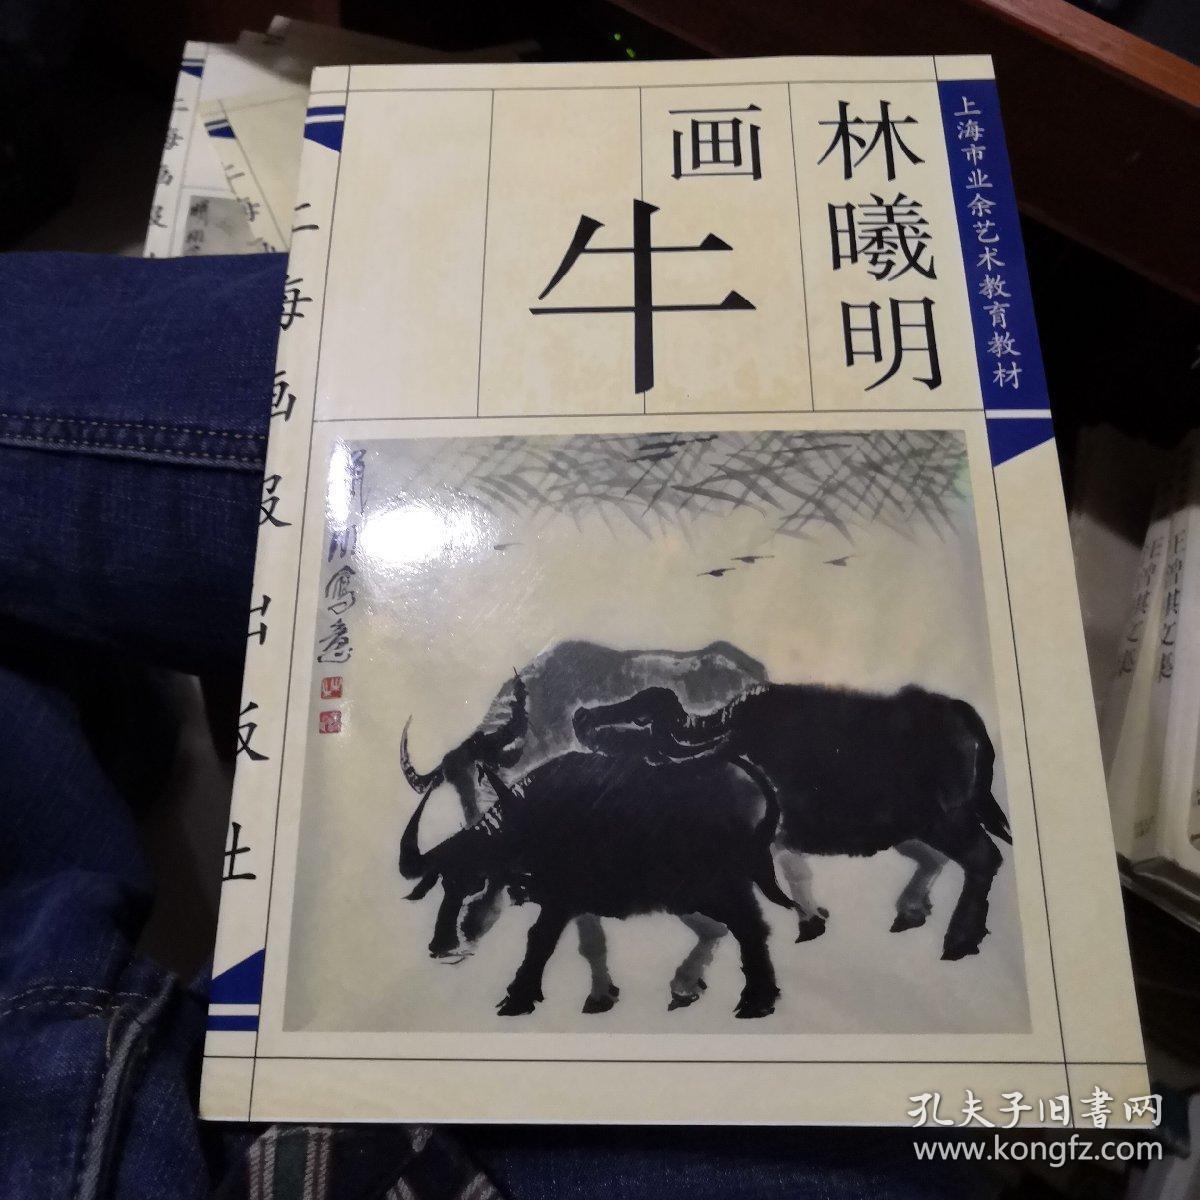 上海市业余艺术教育教材--林曦明画牛